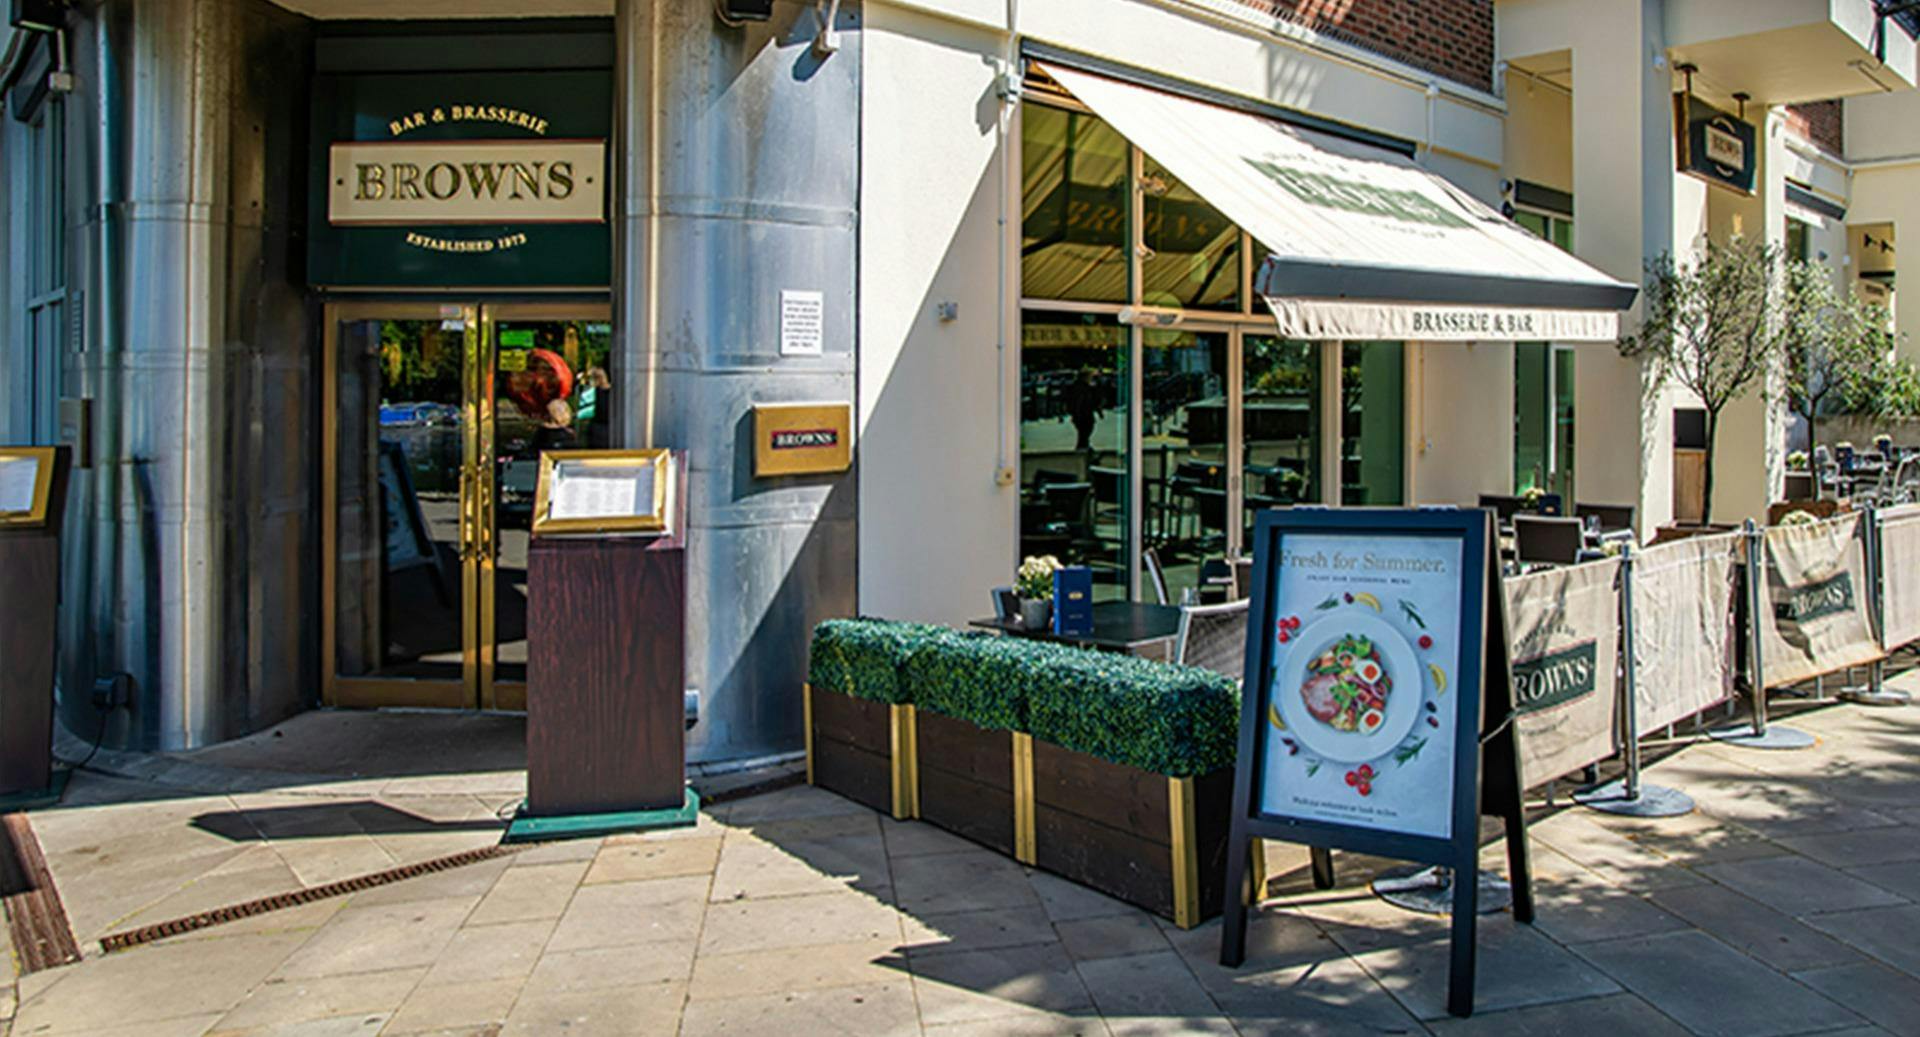 Photo of restaurant Browns Brasserie & Bar - Kingston in Kingston upon Thames, London